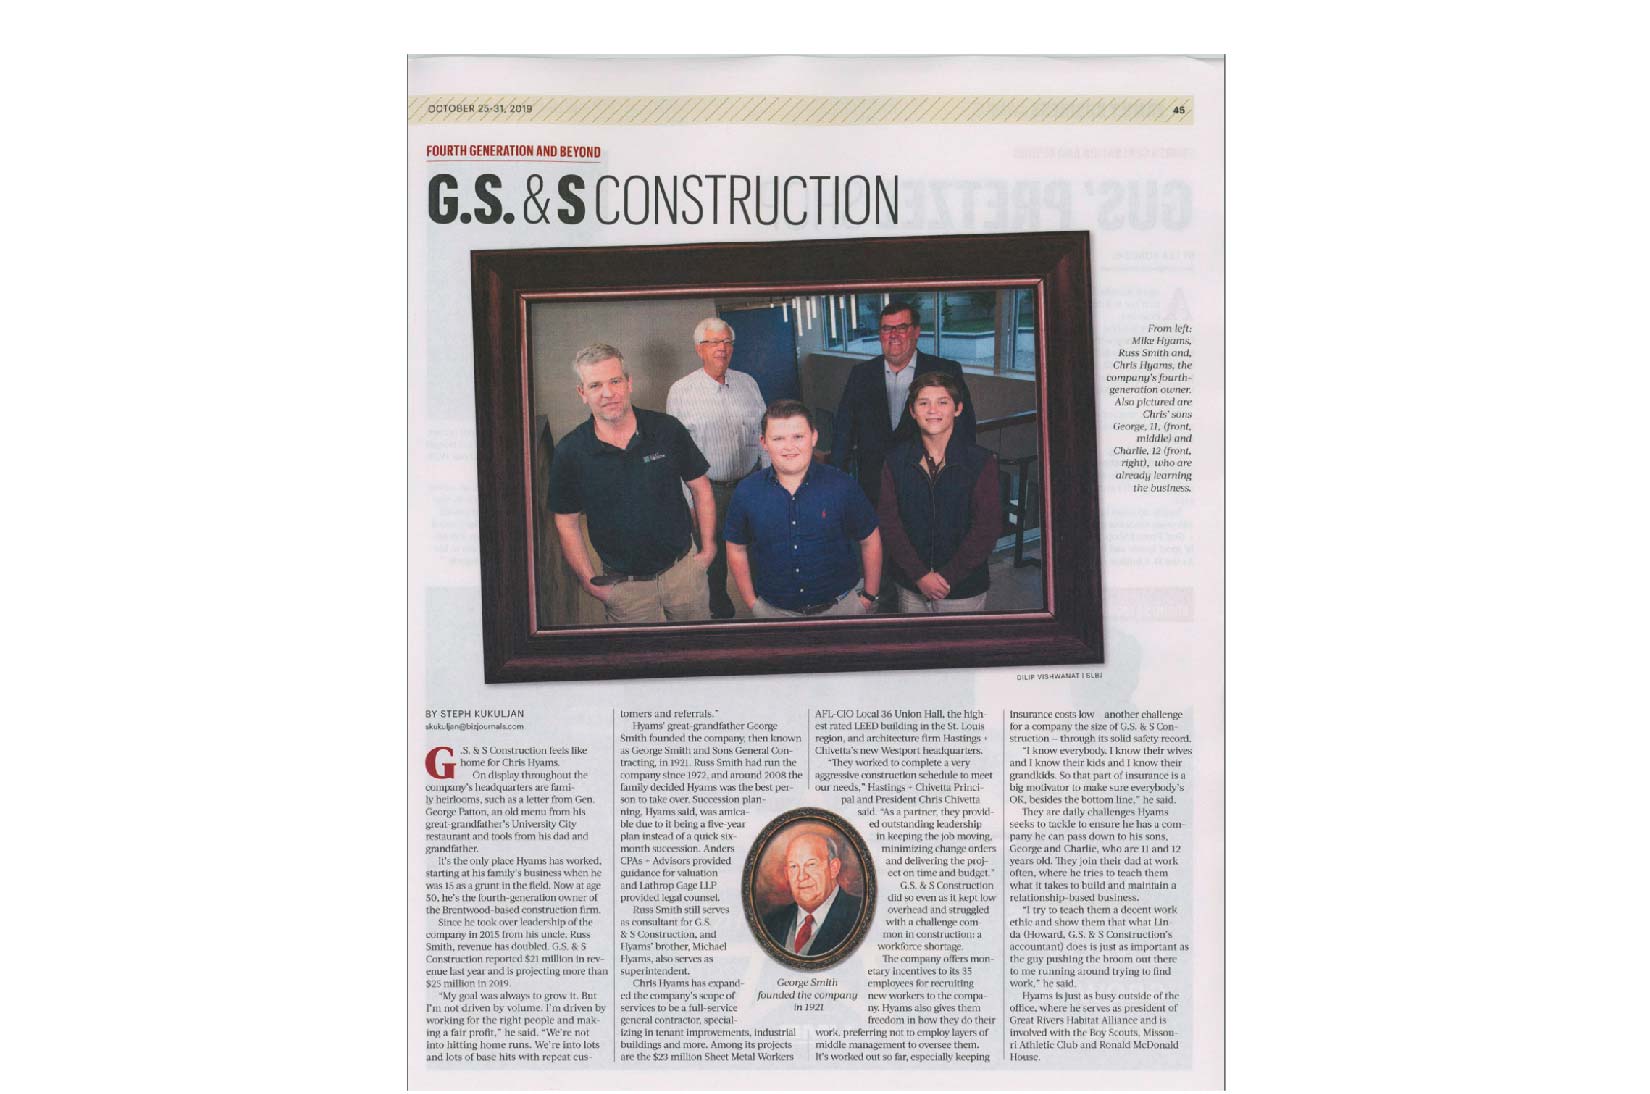 G. S. & S. Construction Wins St. Louis Business Journal Award